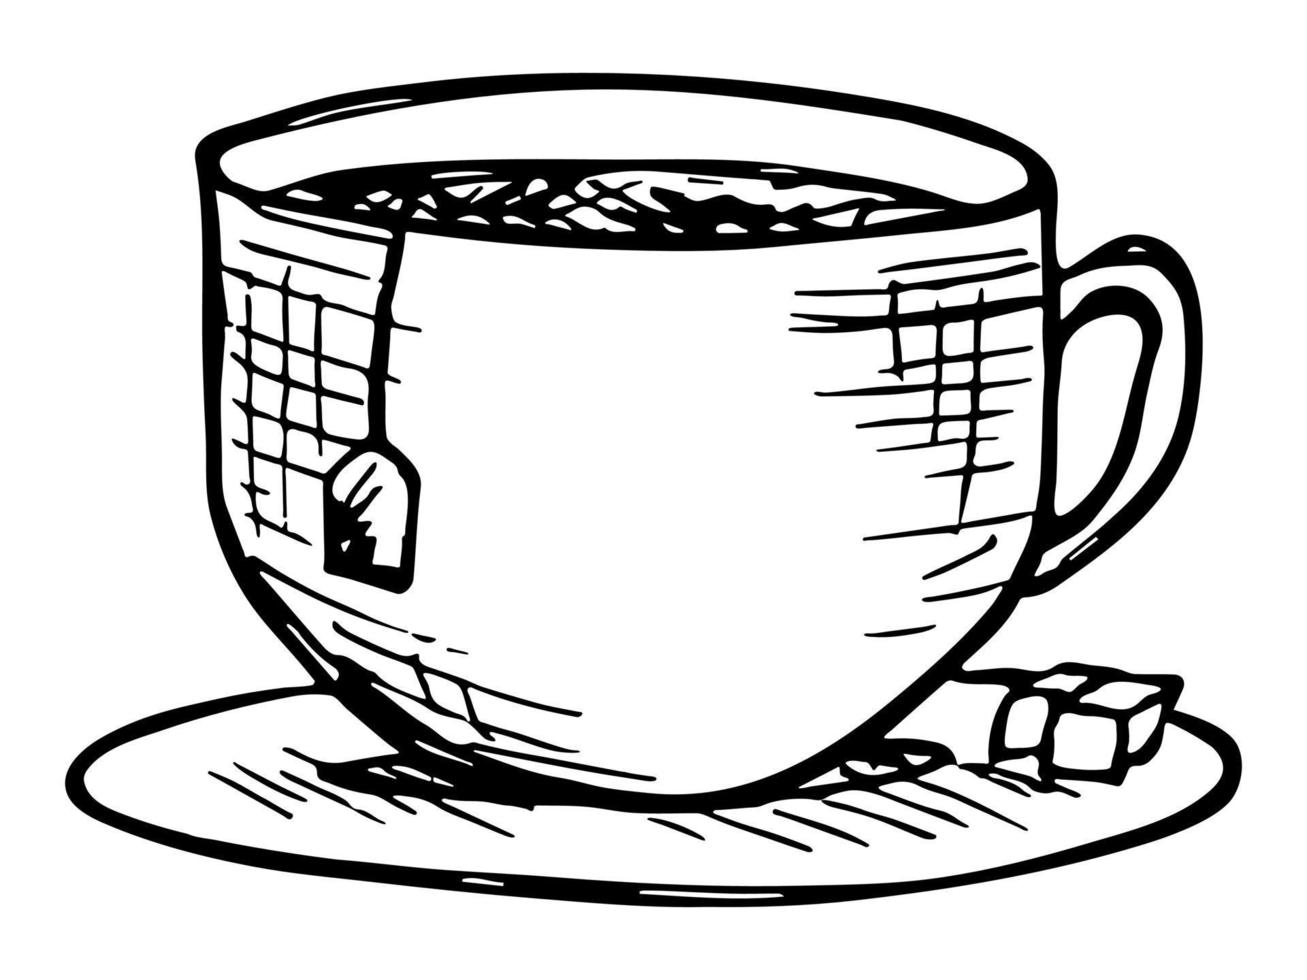 linda taza de ilustración de té. imágenes prediseñadas de taza simple. acogedor hogar garabato vector